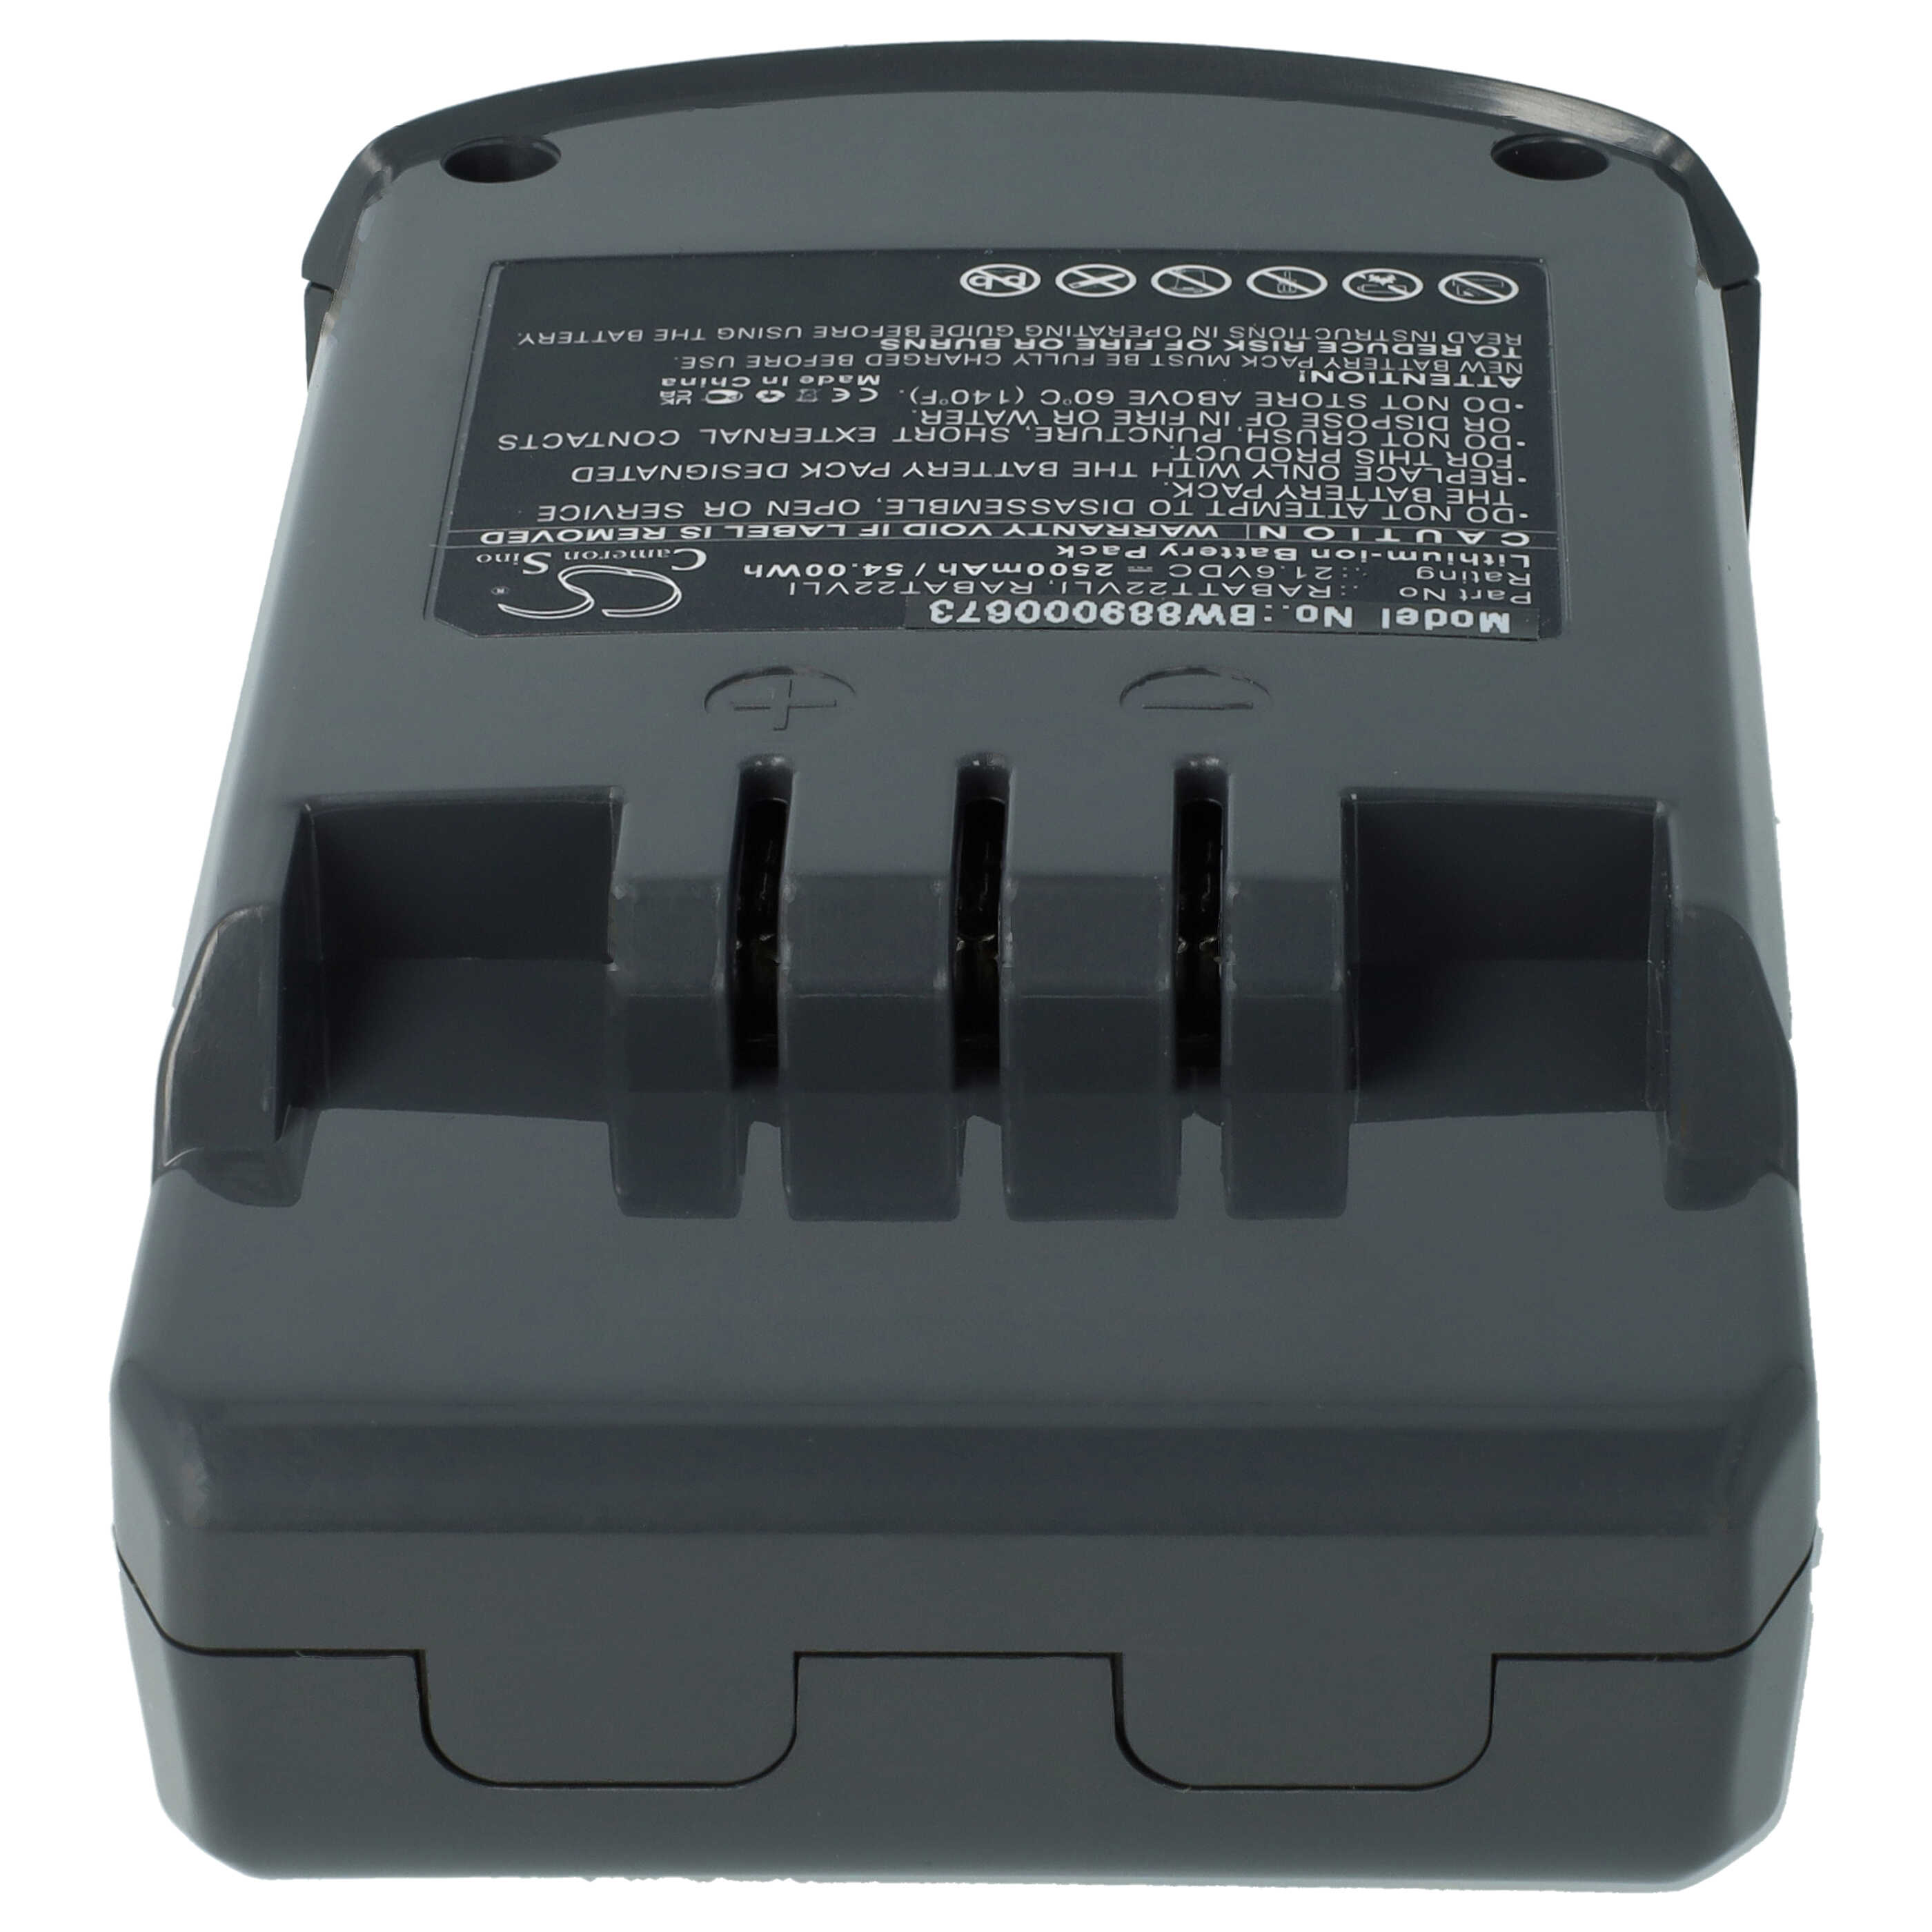 Batteria sostituisce Hoover RABAT22VLI, 6.20.40.01-0, 48023809 per aspirapolvere Hoover - 2500mAh 21,6V Li-Ion